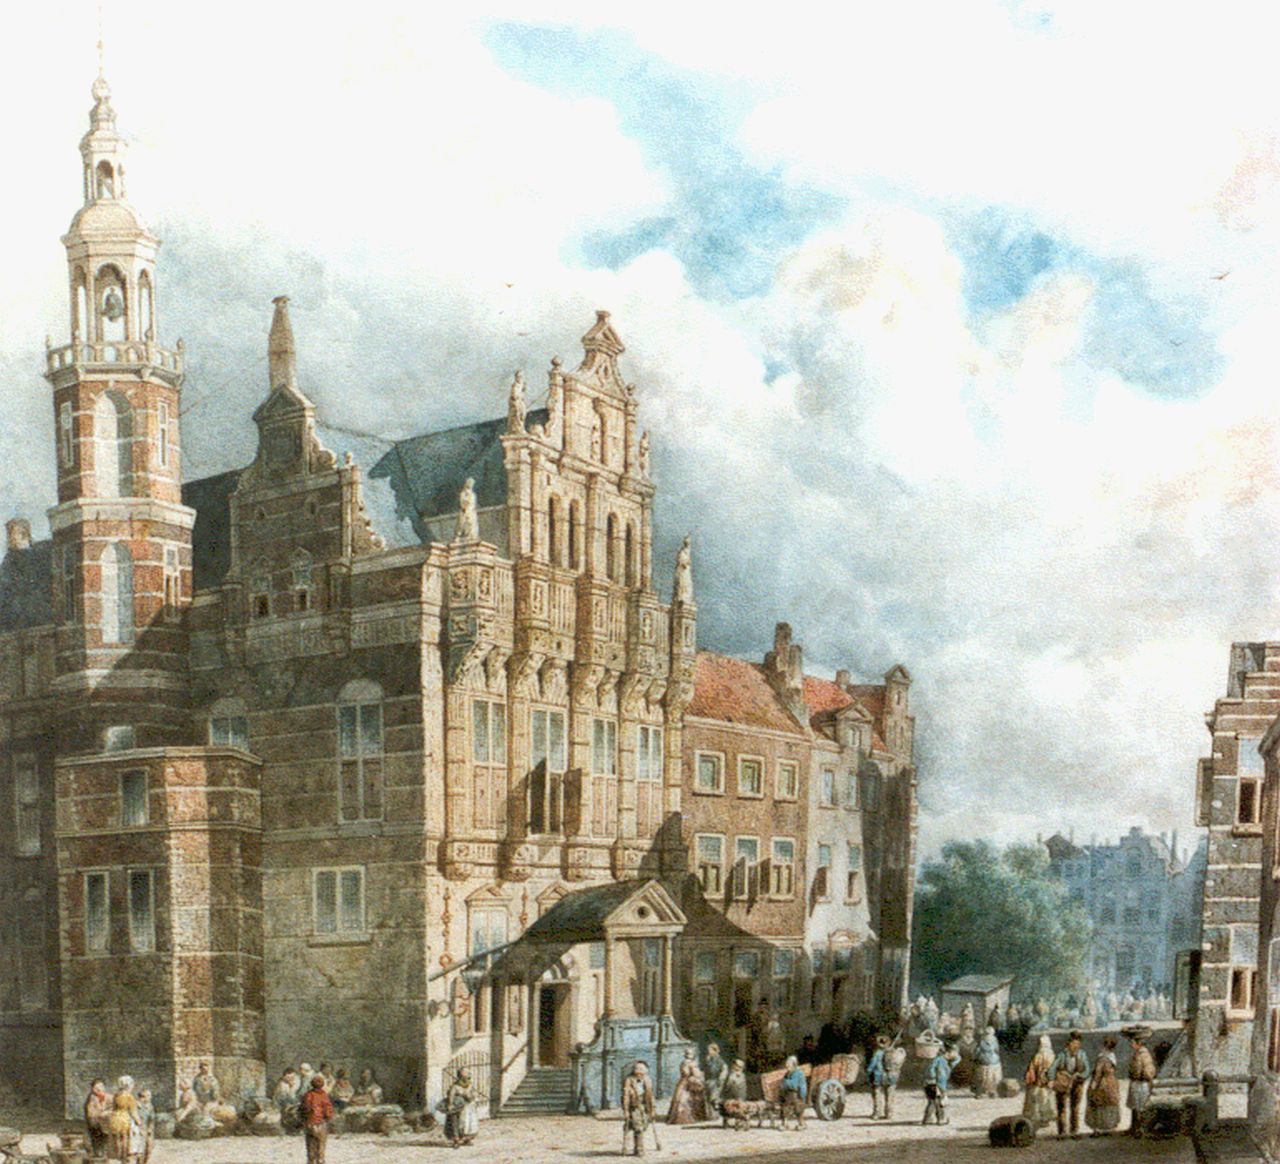 Vrolijk J.A.  | Jacobus 'Adriaan' Vrolijk, Figuren op marktplein Den Haag, aquarel op papier 40,2 x 43,0 cm, gesigneerd rechtsonder en gedateerd 1860